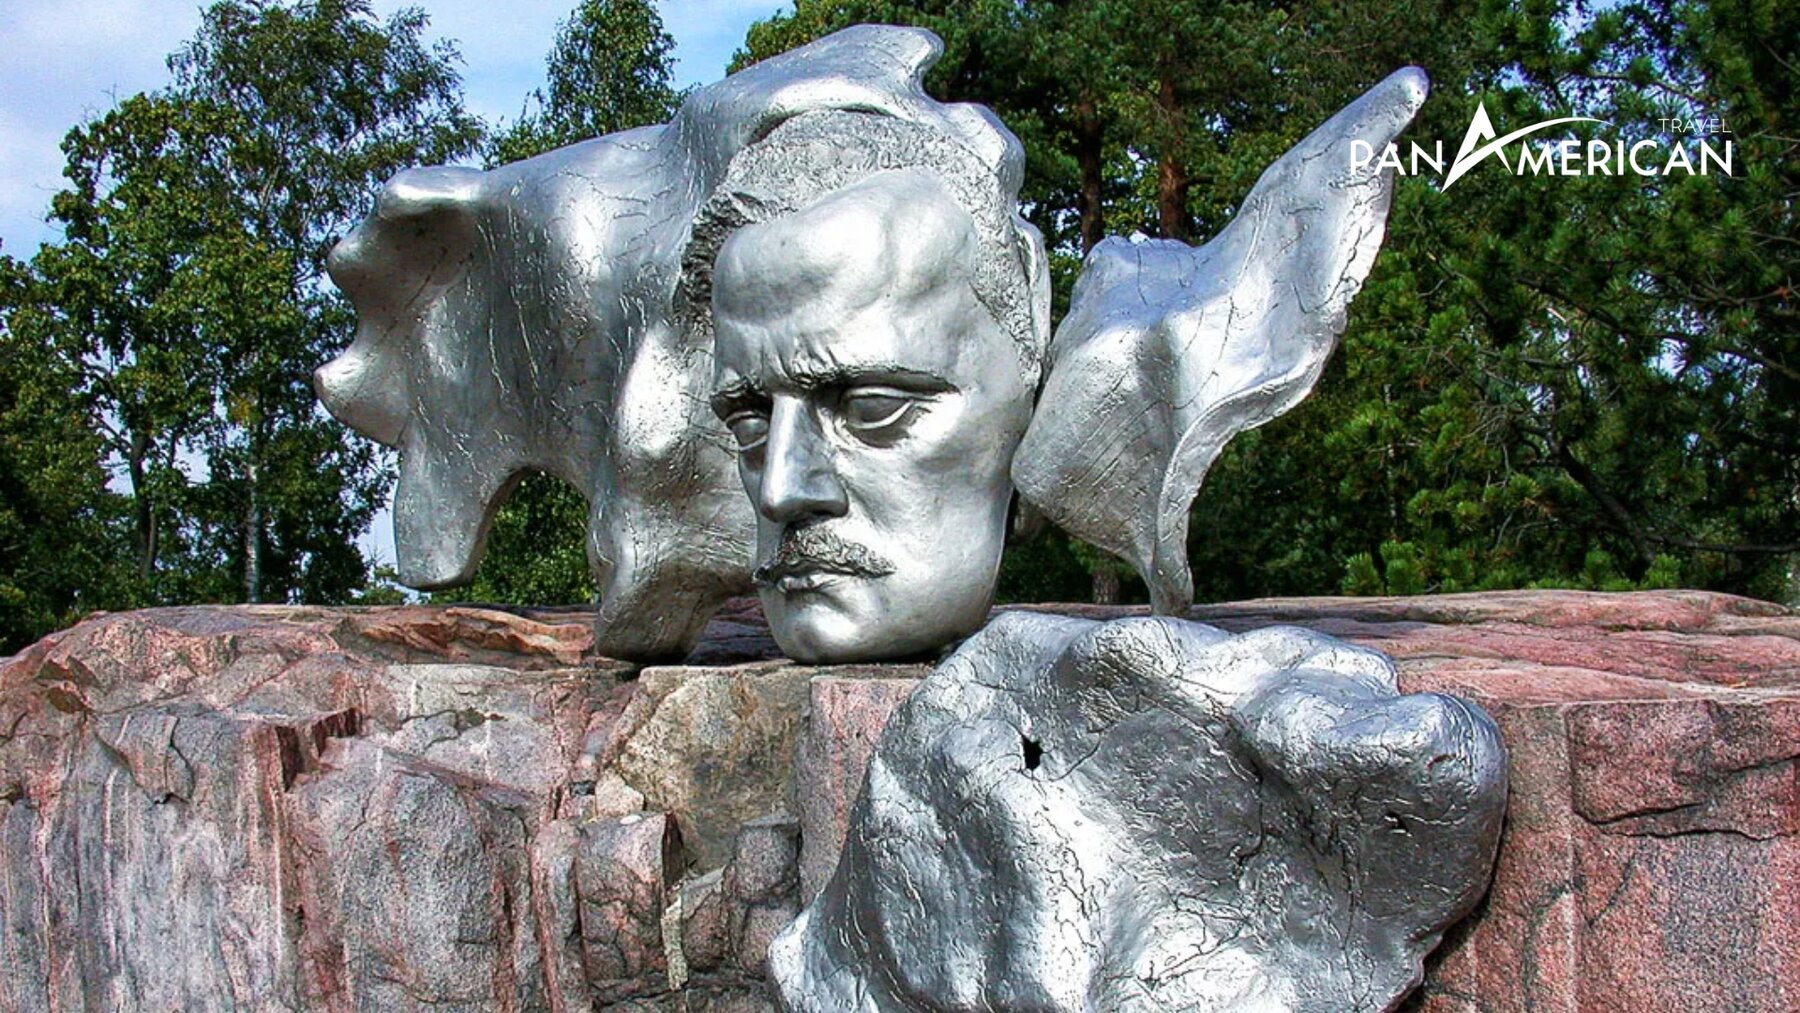 Chân dung khuôn mặt của ông Sibelius trên đài tưởng niệm